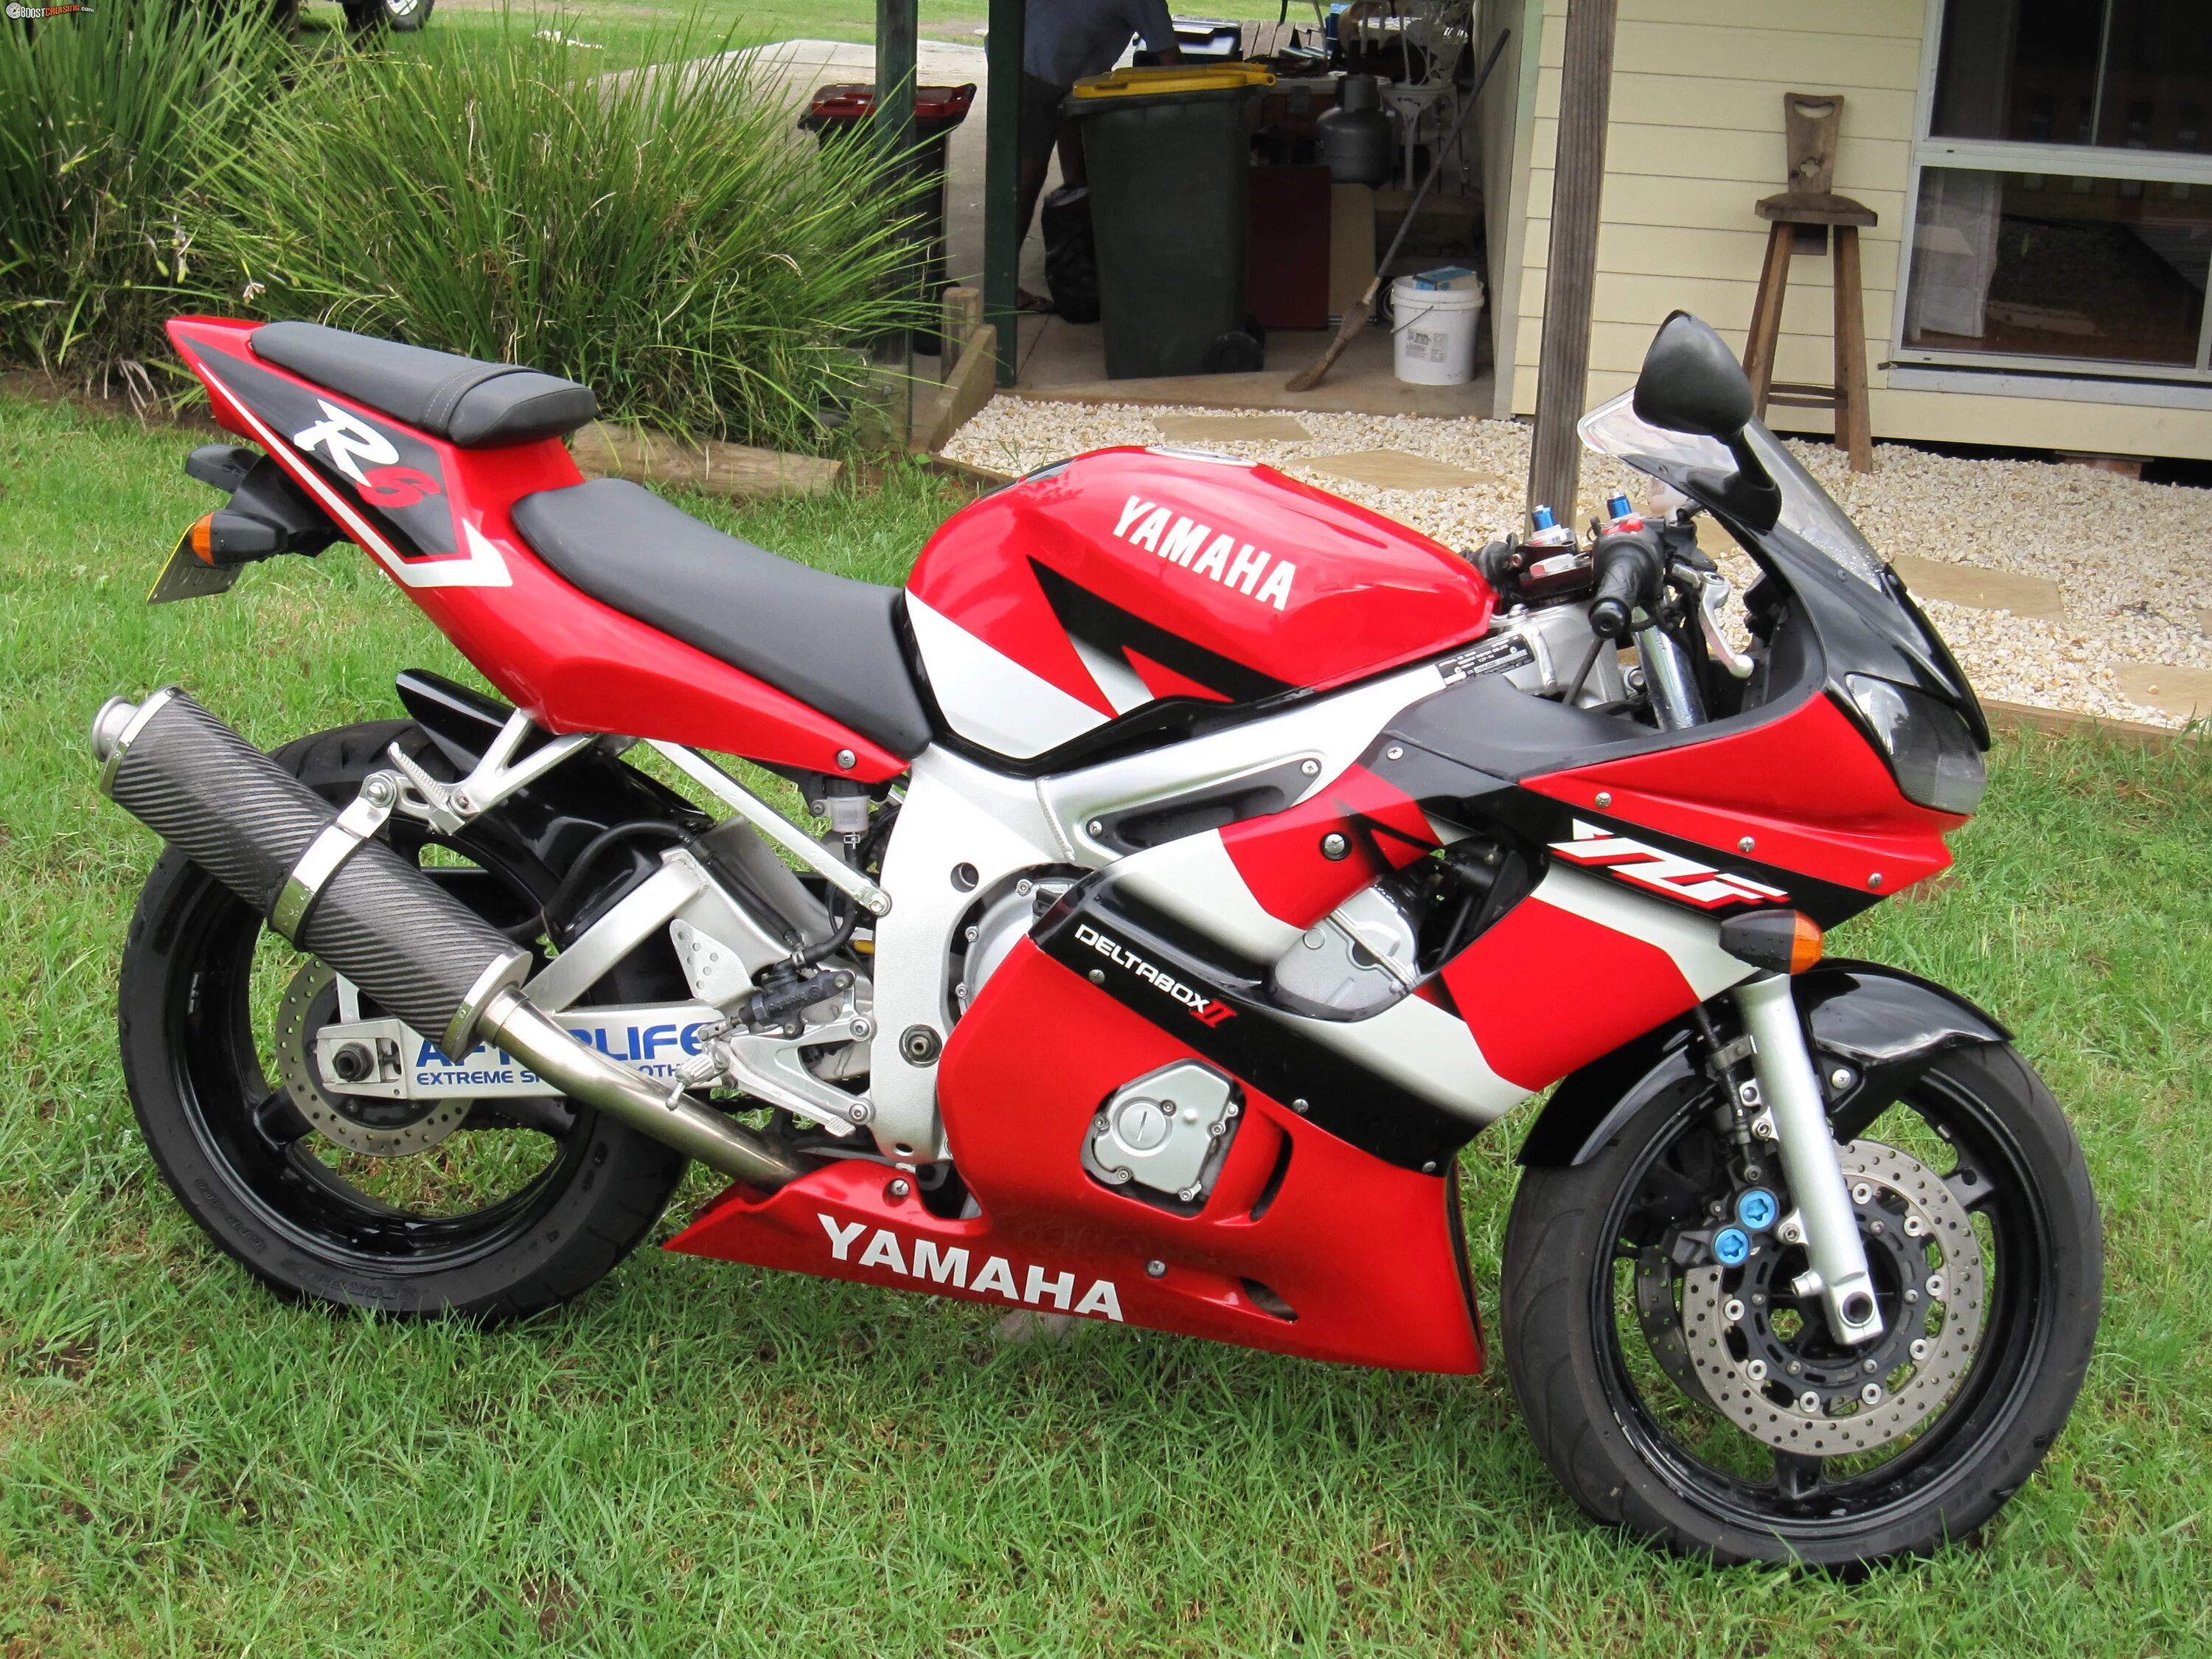 YZF r6 2001. Yamaha r6 2001. Yamaha YZF-r6 2001. Yamaha YZF-r6 1999.